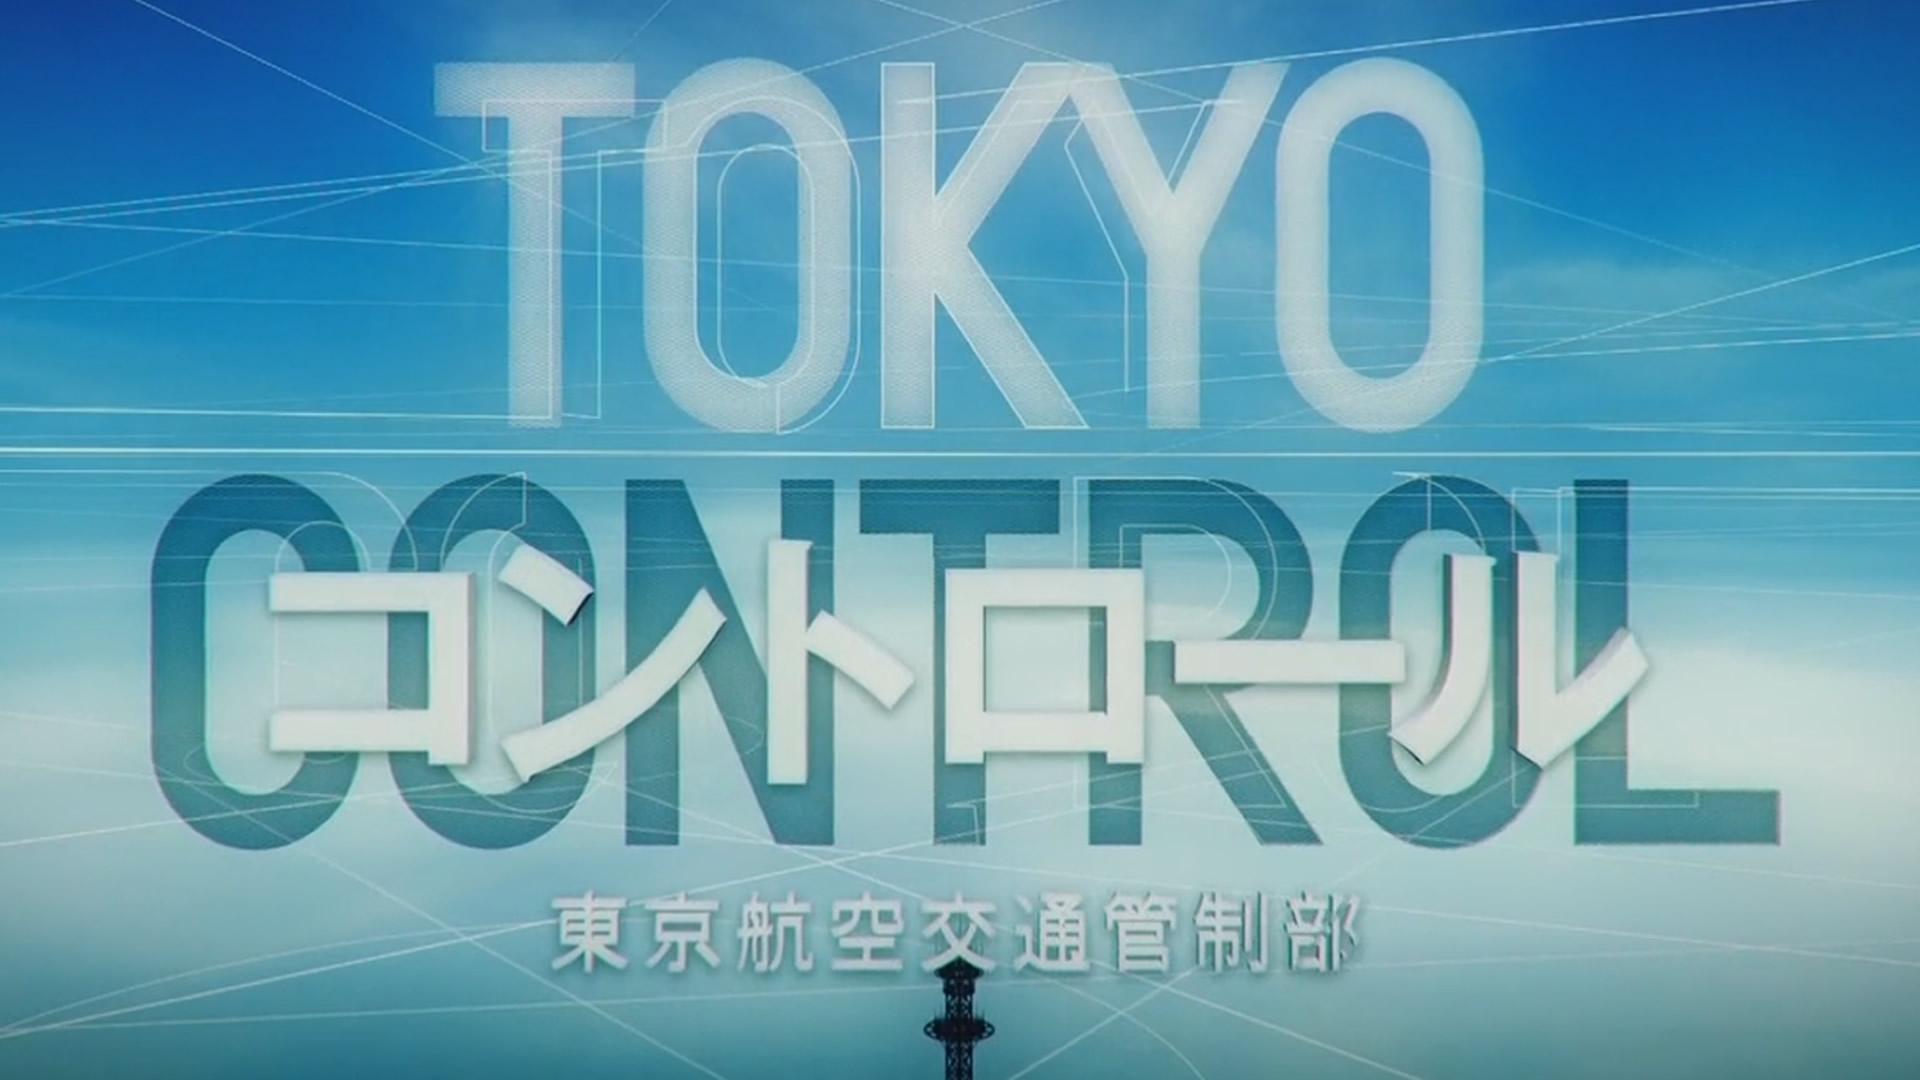 Tokyo Control